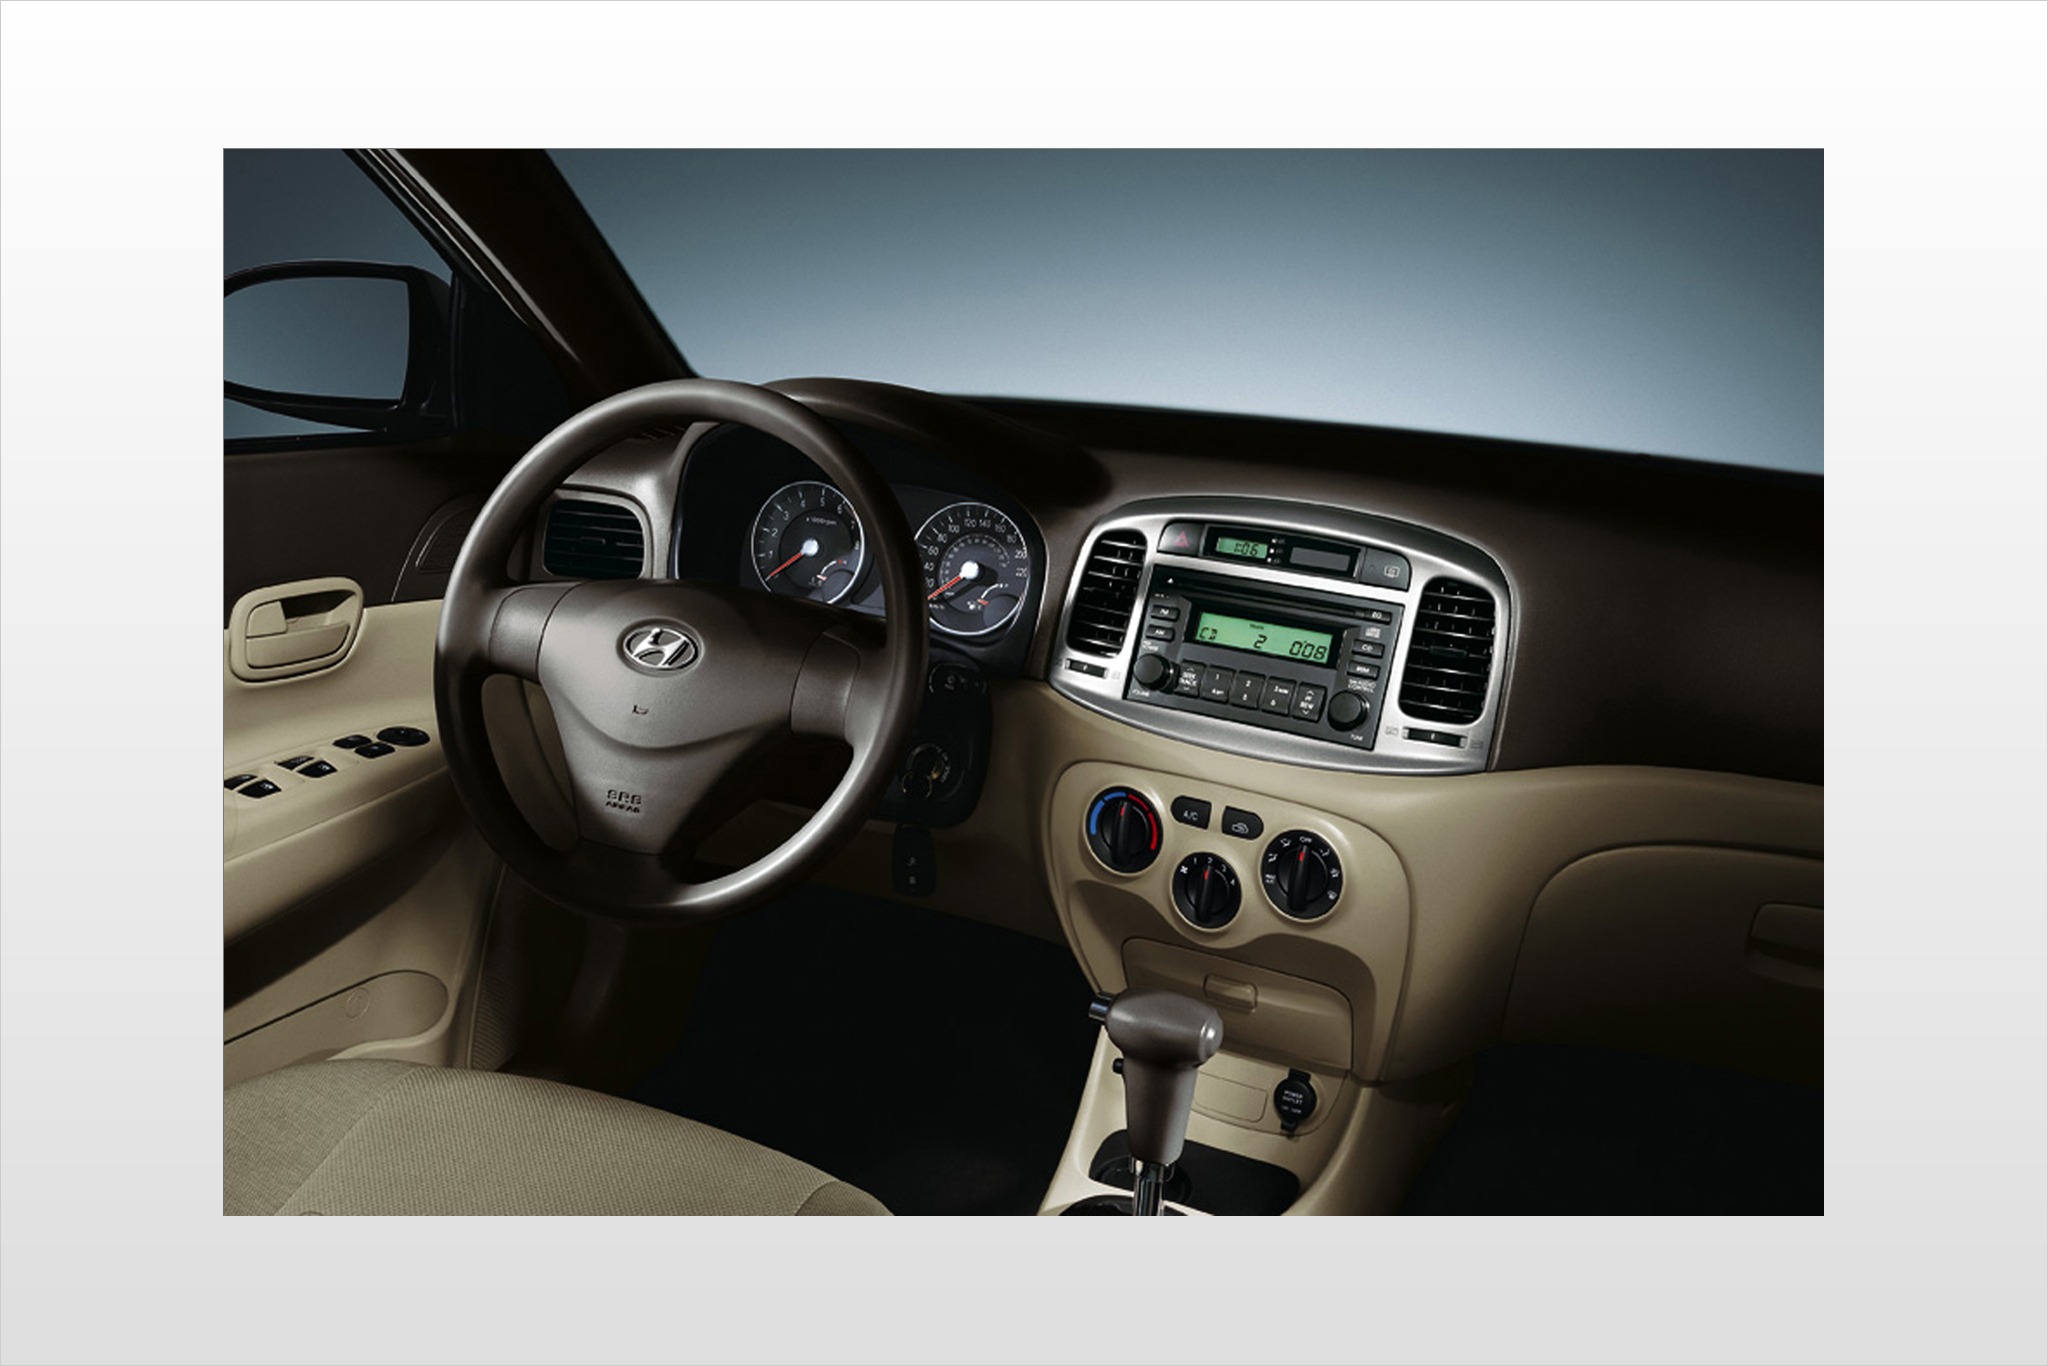 2010 Hyundai Accent GLS Sedan Interior